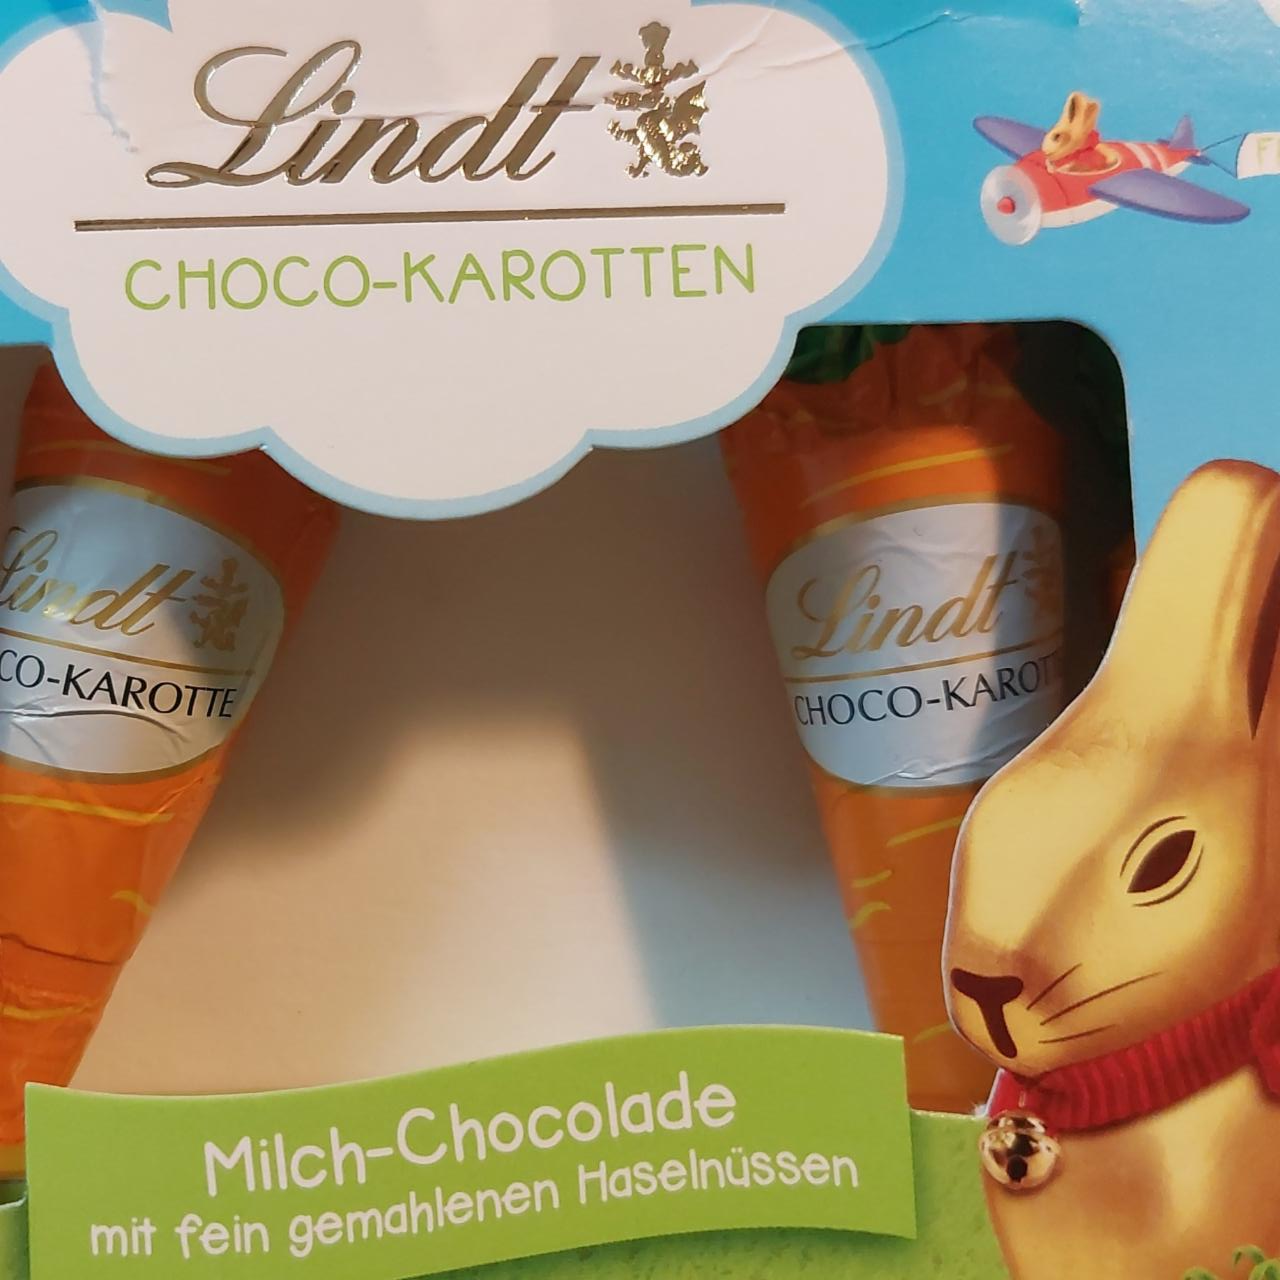 Fotografie - Choco-karotten Milch-Chocolate Lindt